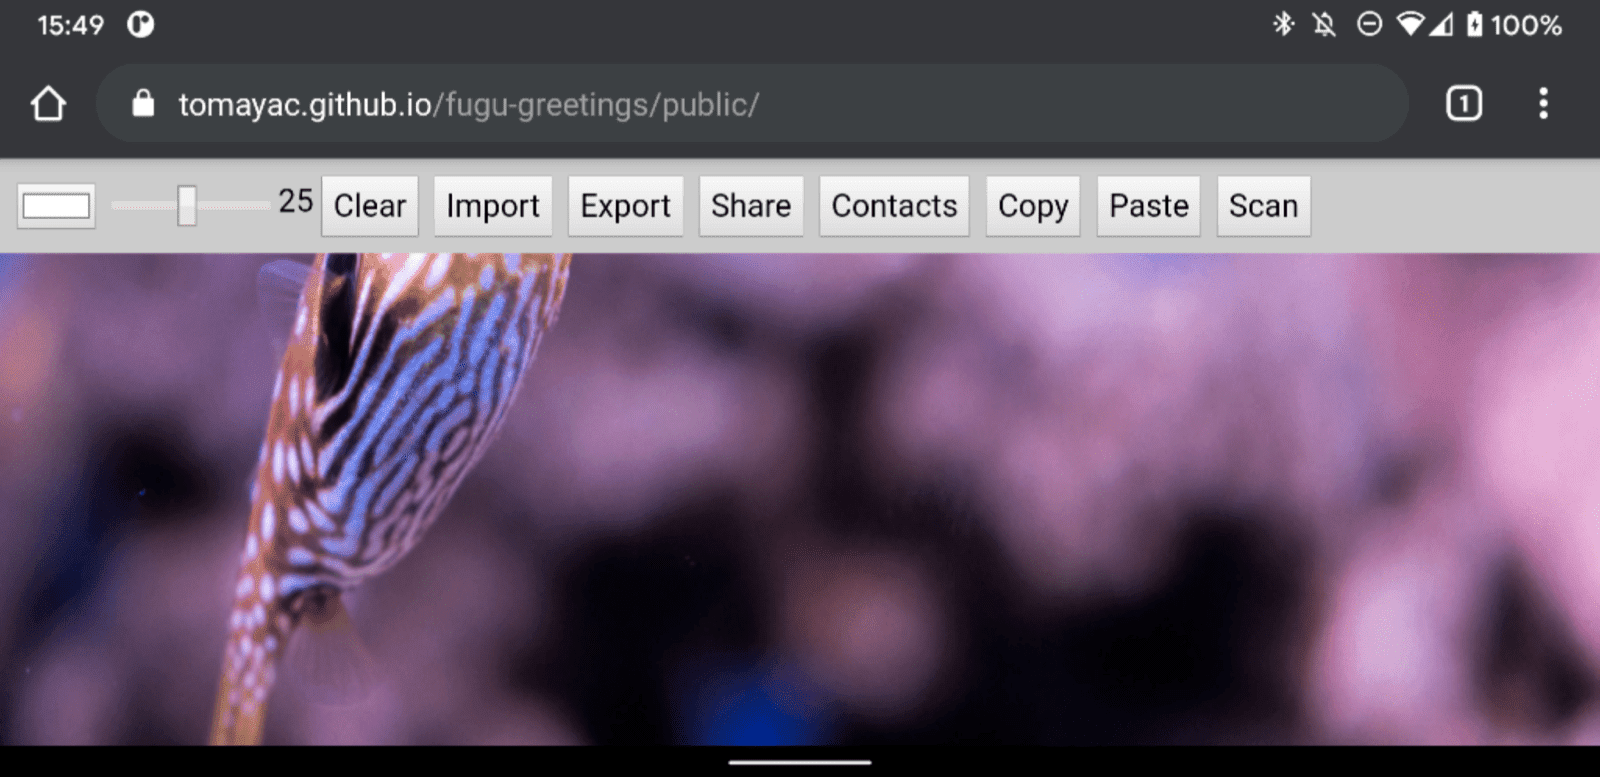 在 Android Chrome 上运行的 Fugu Greetings 画面，显示了许多可用功能。